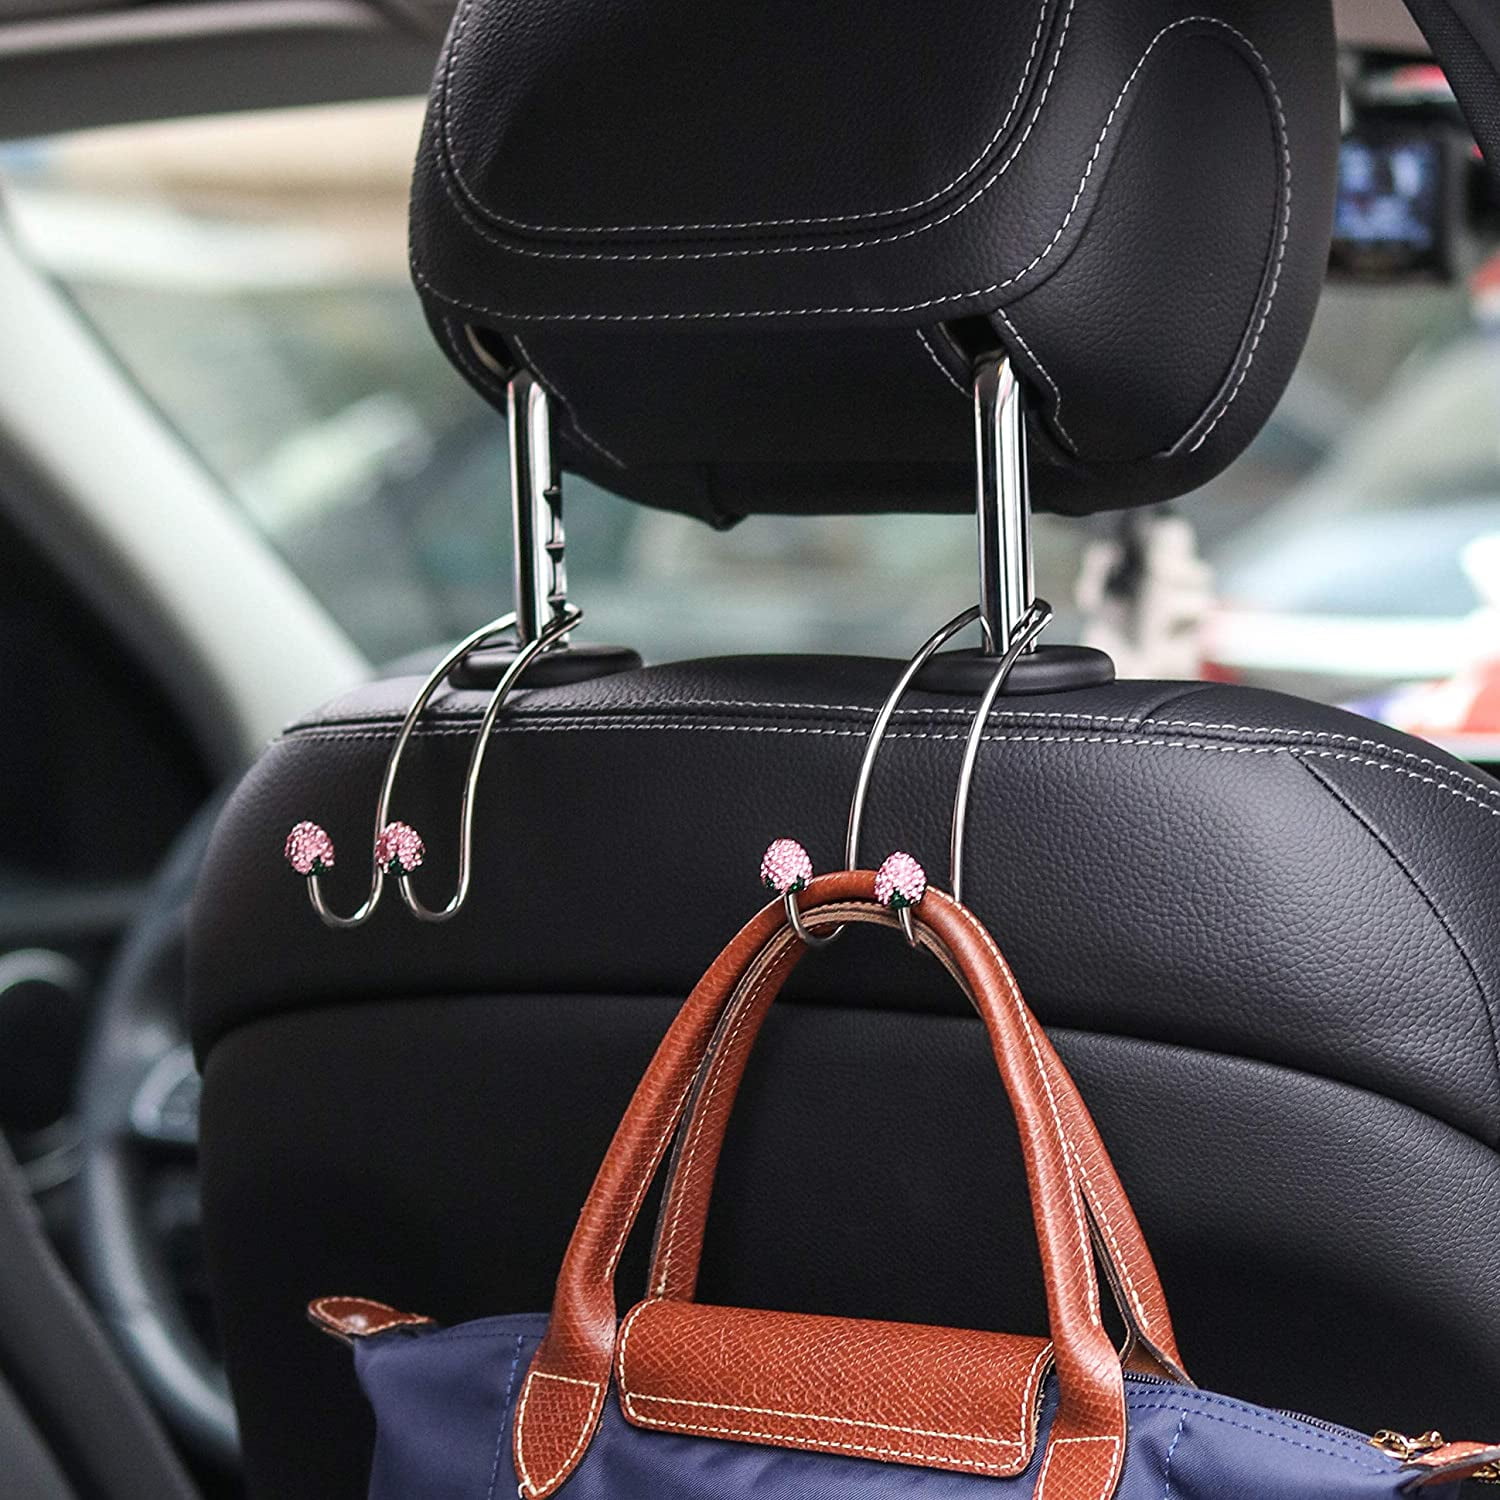 2pcs Universal Car Back Seat Headrest Hanger Holder Hook for Bag Purse Coat 